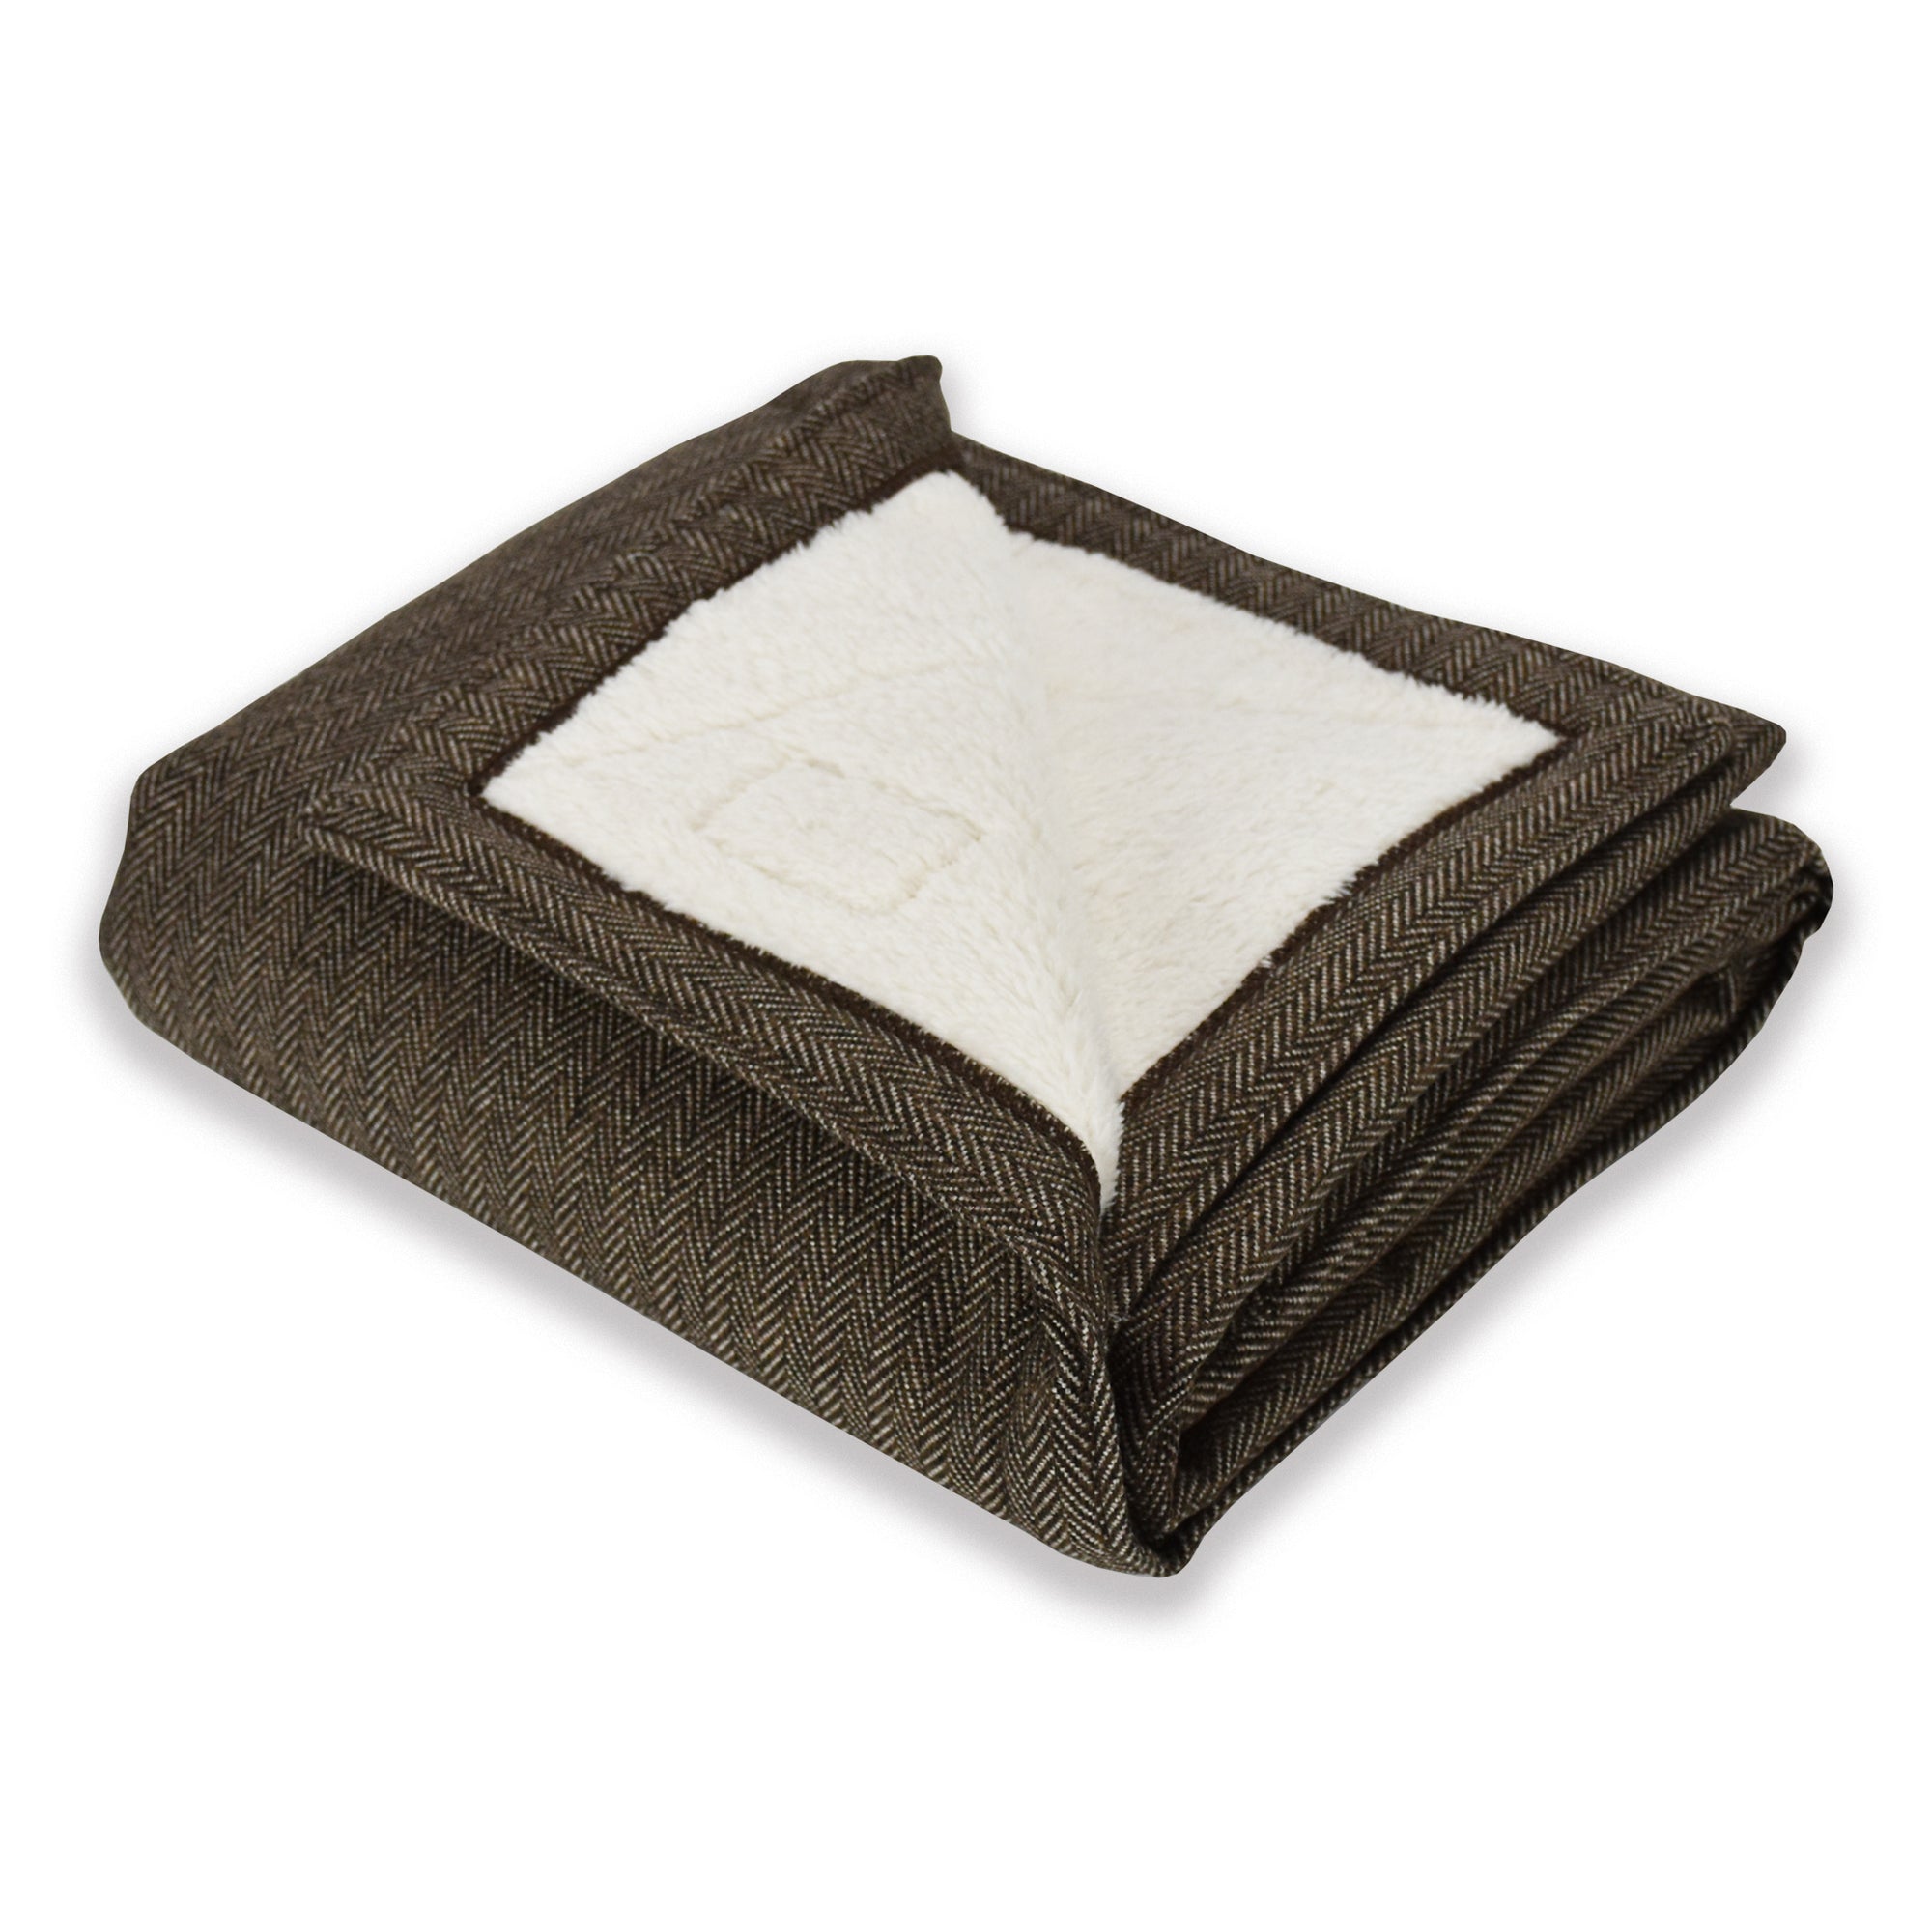 Blanket - Brown Herringbone